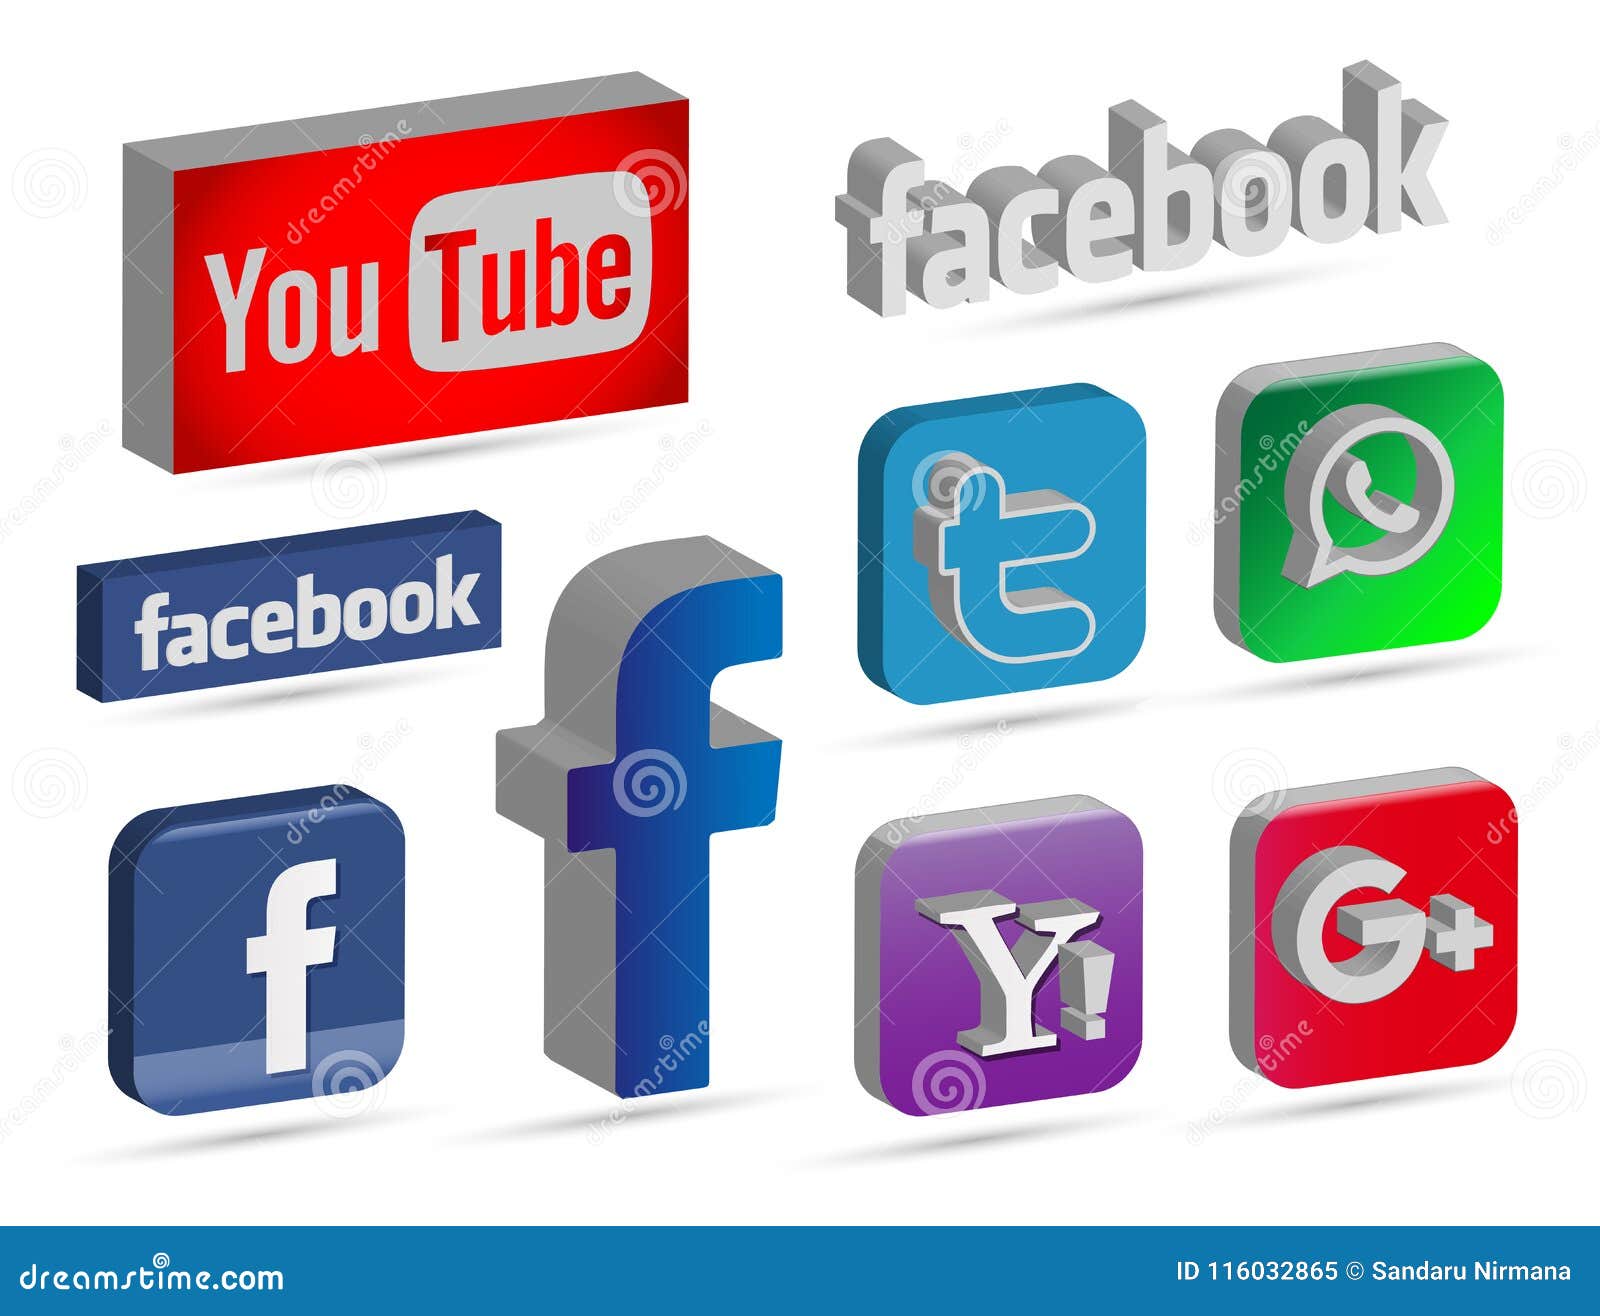 Mediamarkt logo - Social media & Logos Icons